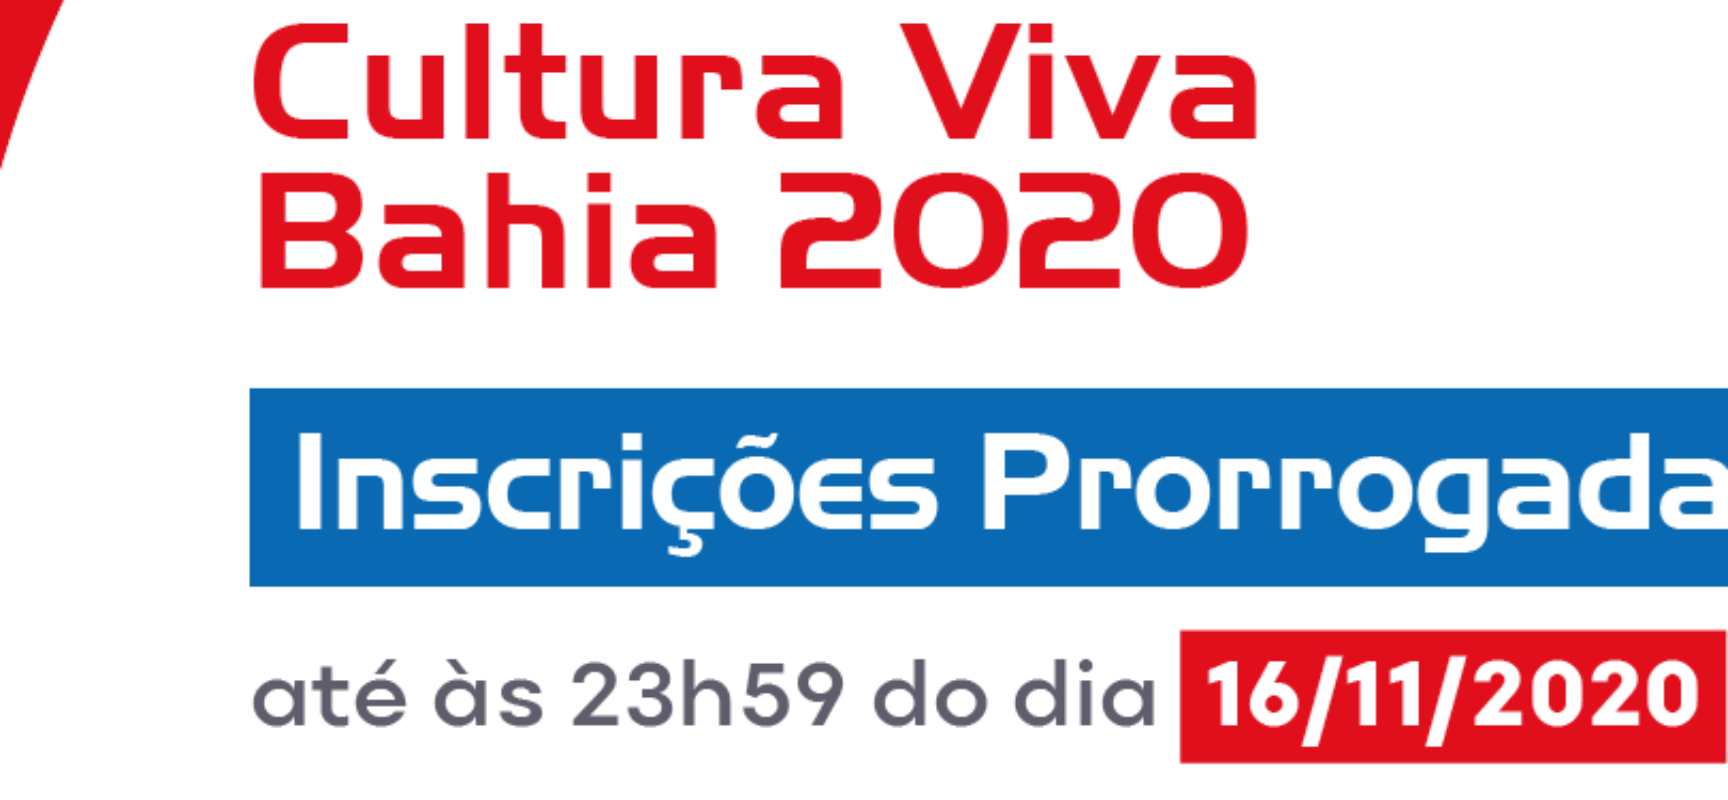 Prorrogadas as inscrições para o Prêmio Cultura Viva Bahia 2020